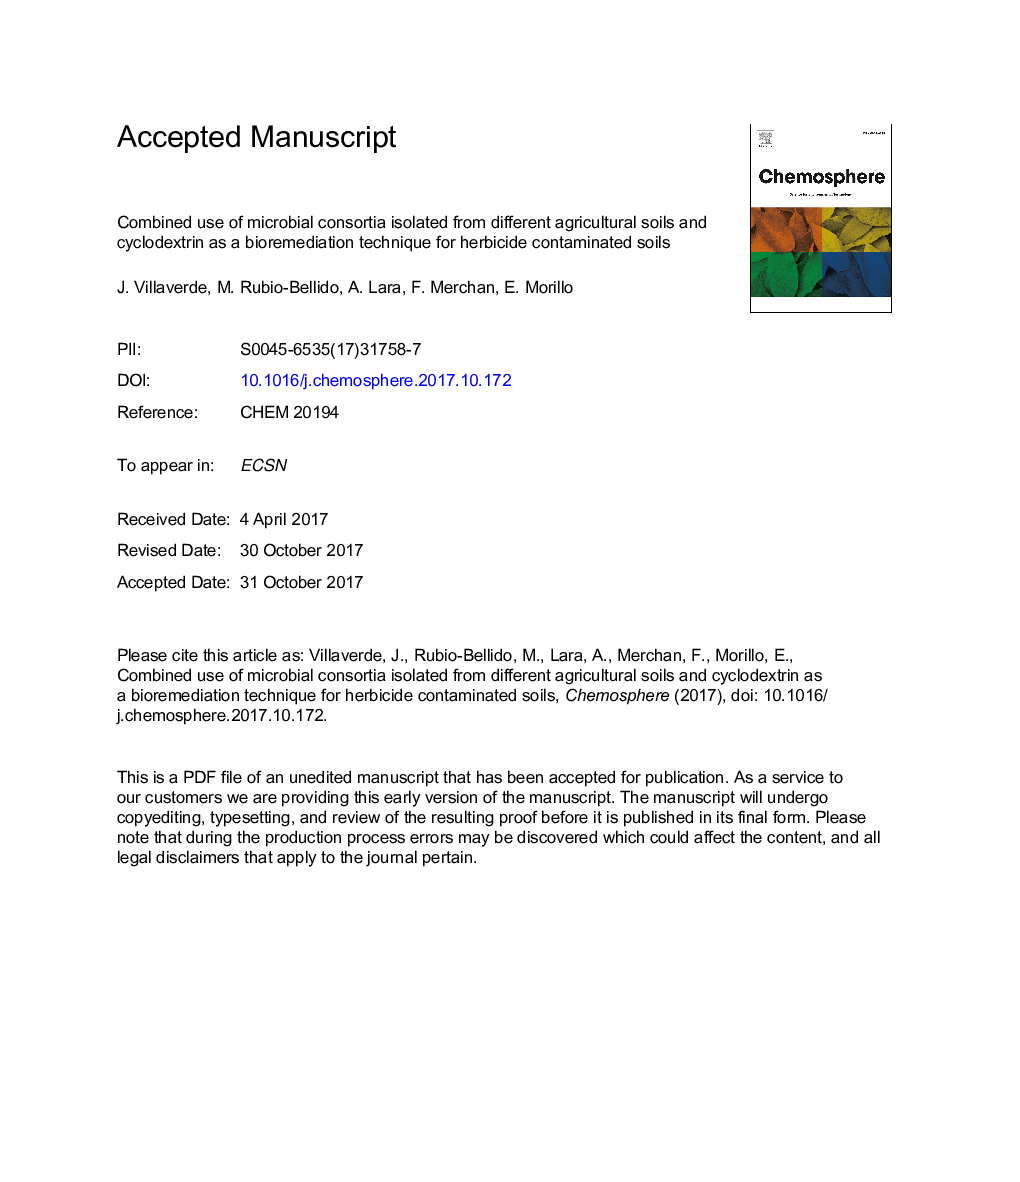 استفاده ترکیبی از کنسرسیوم های میکروبی جدا شده از خاک های مختلف کشاورزی و سیکلوکود کسترین به عنوان یک تکنیک زیست شناسی برای خاک های آلوده به علف کش 